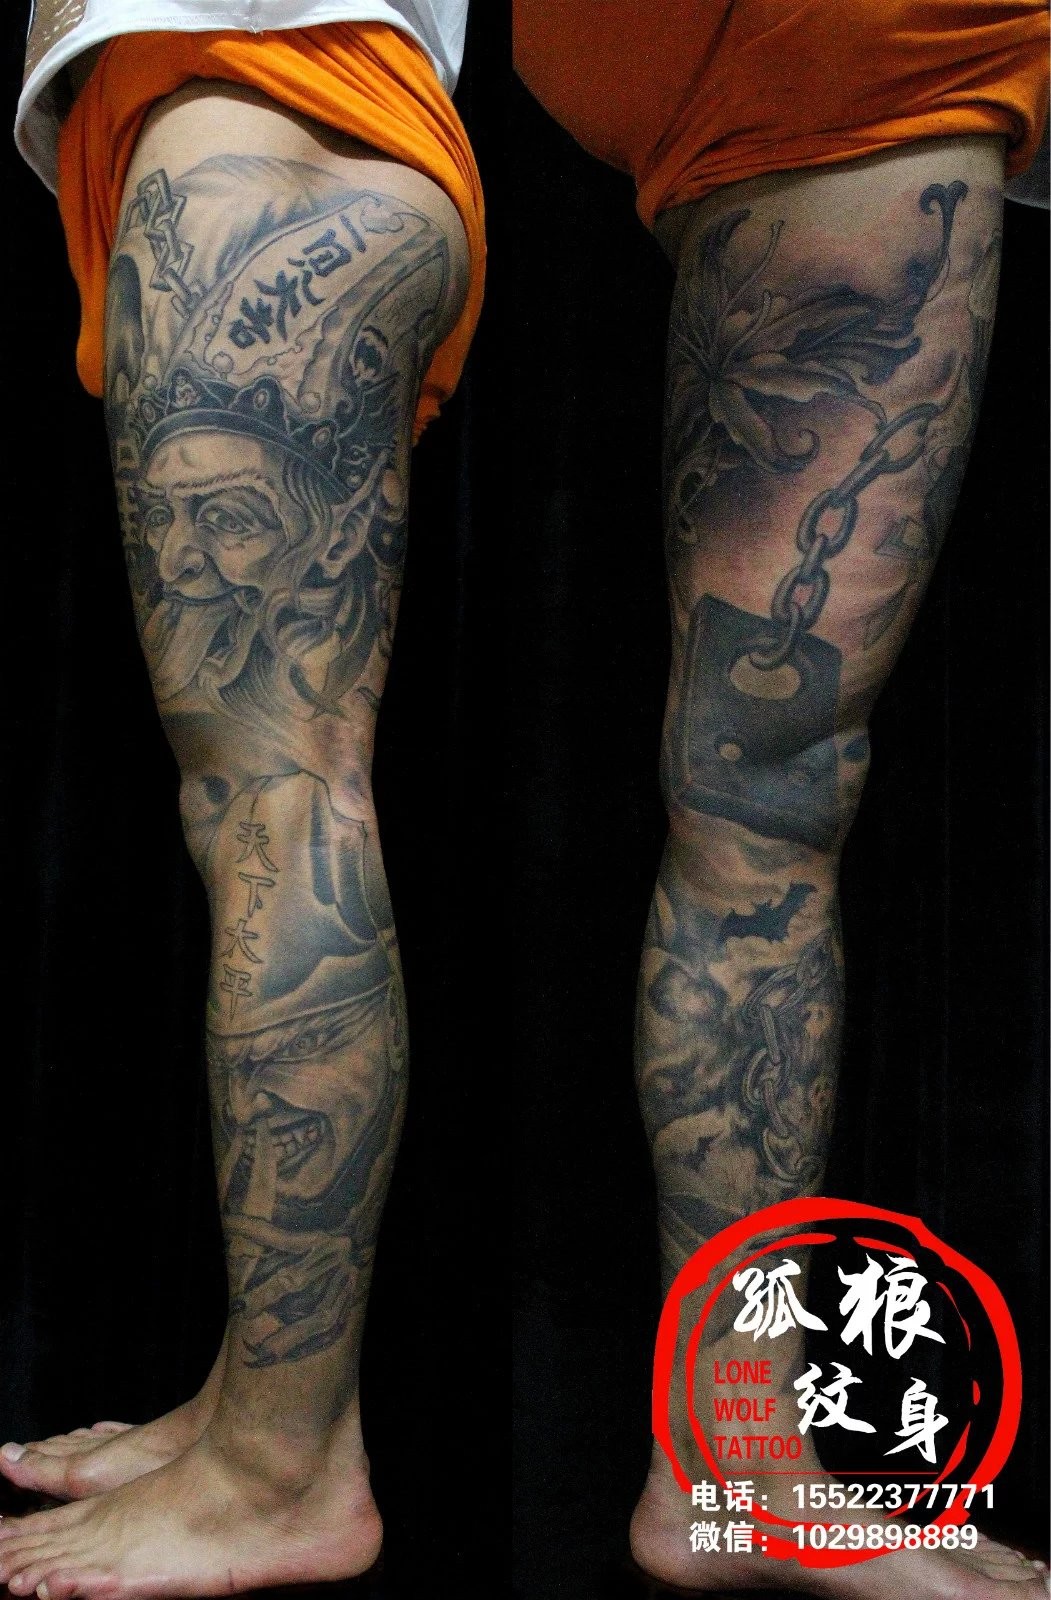 男士黑白无常包整腿花腿纹身 宝坻孤狼纹身工作室作品 天津